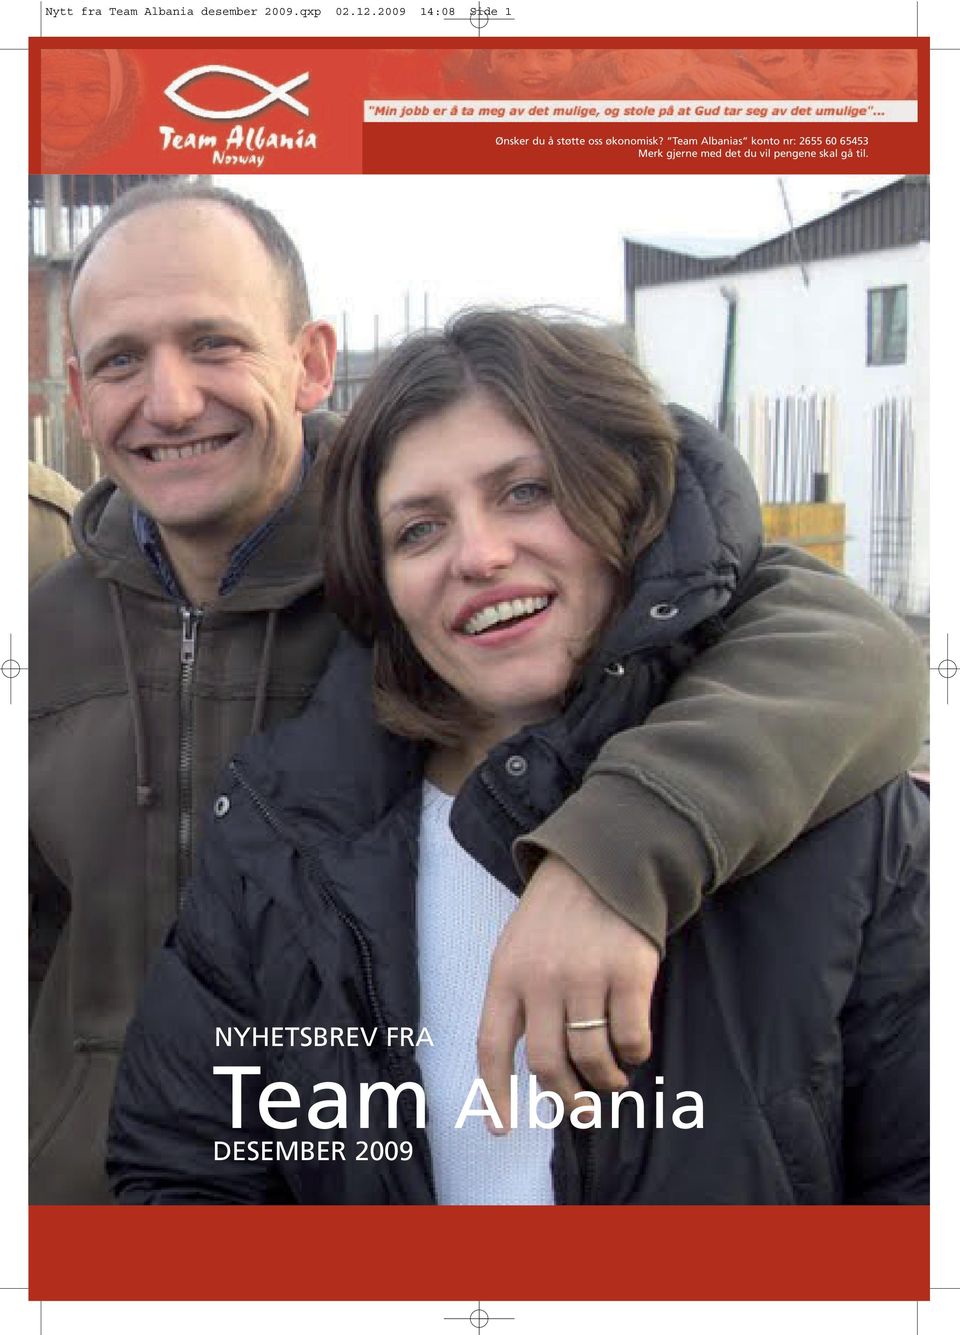 Team Albanias konto nr: 2655 60 65453 Merk gjerne med